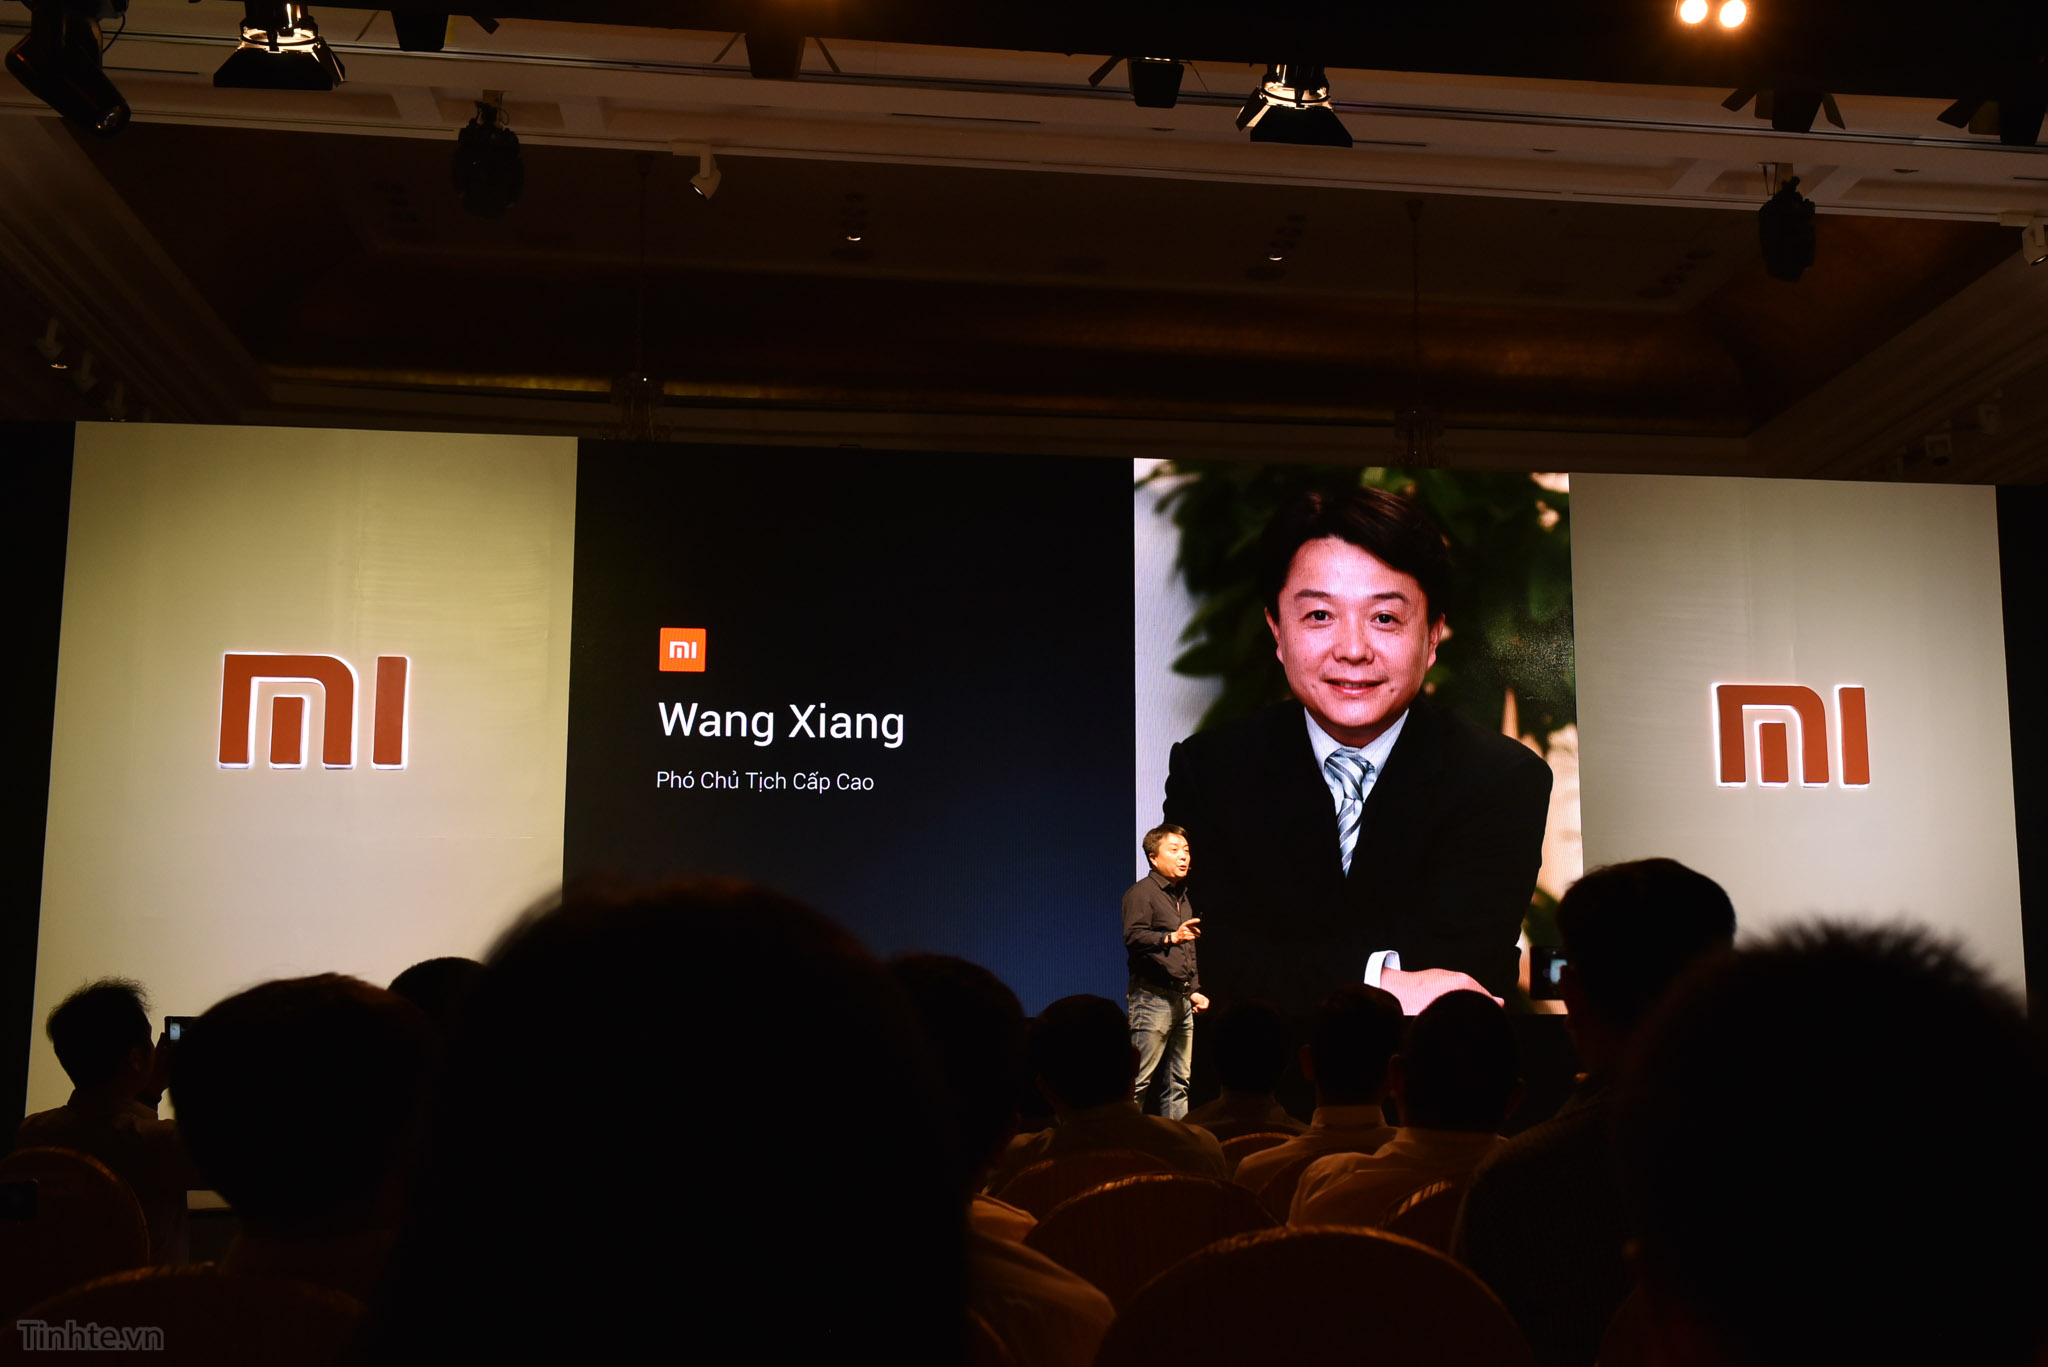 Xiaomi_chinh_hang_viet_nam_tinhte.vn.jpg